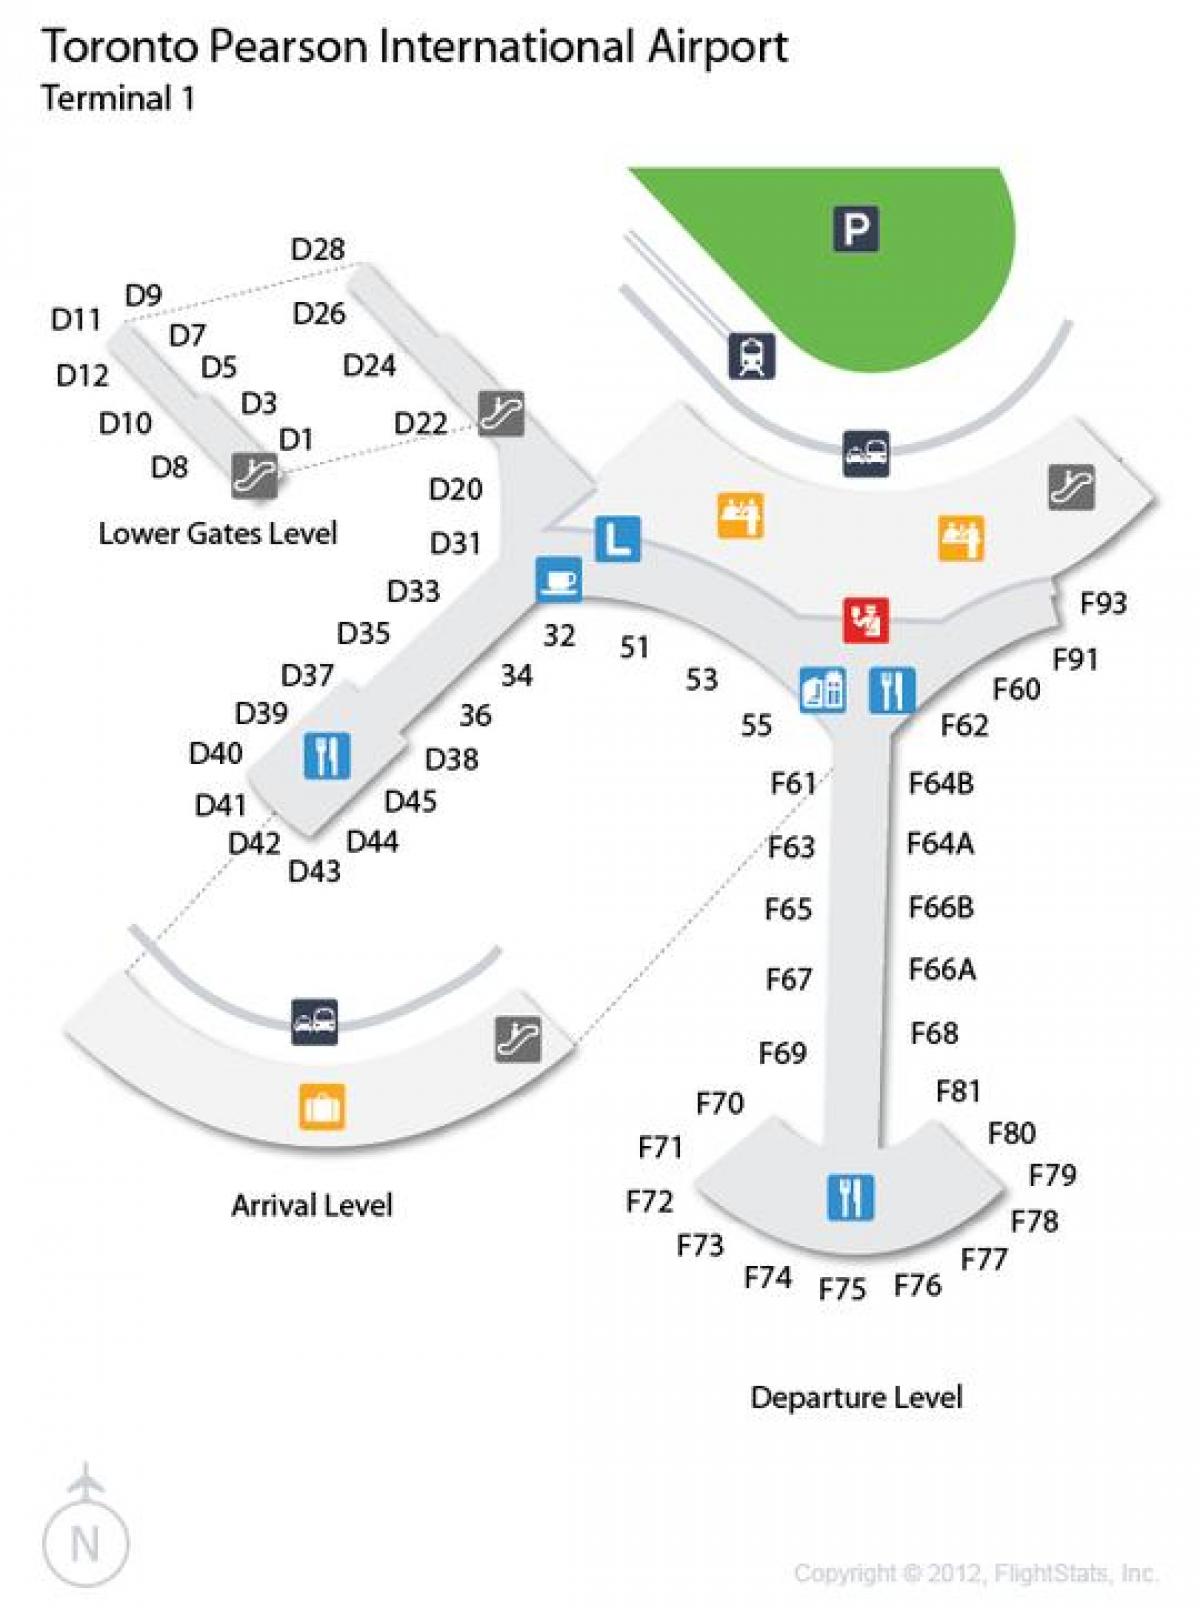 რუკა ტორონტოში Pearson საერთაშორისო აეროპორტის ტერმინალის 1